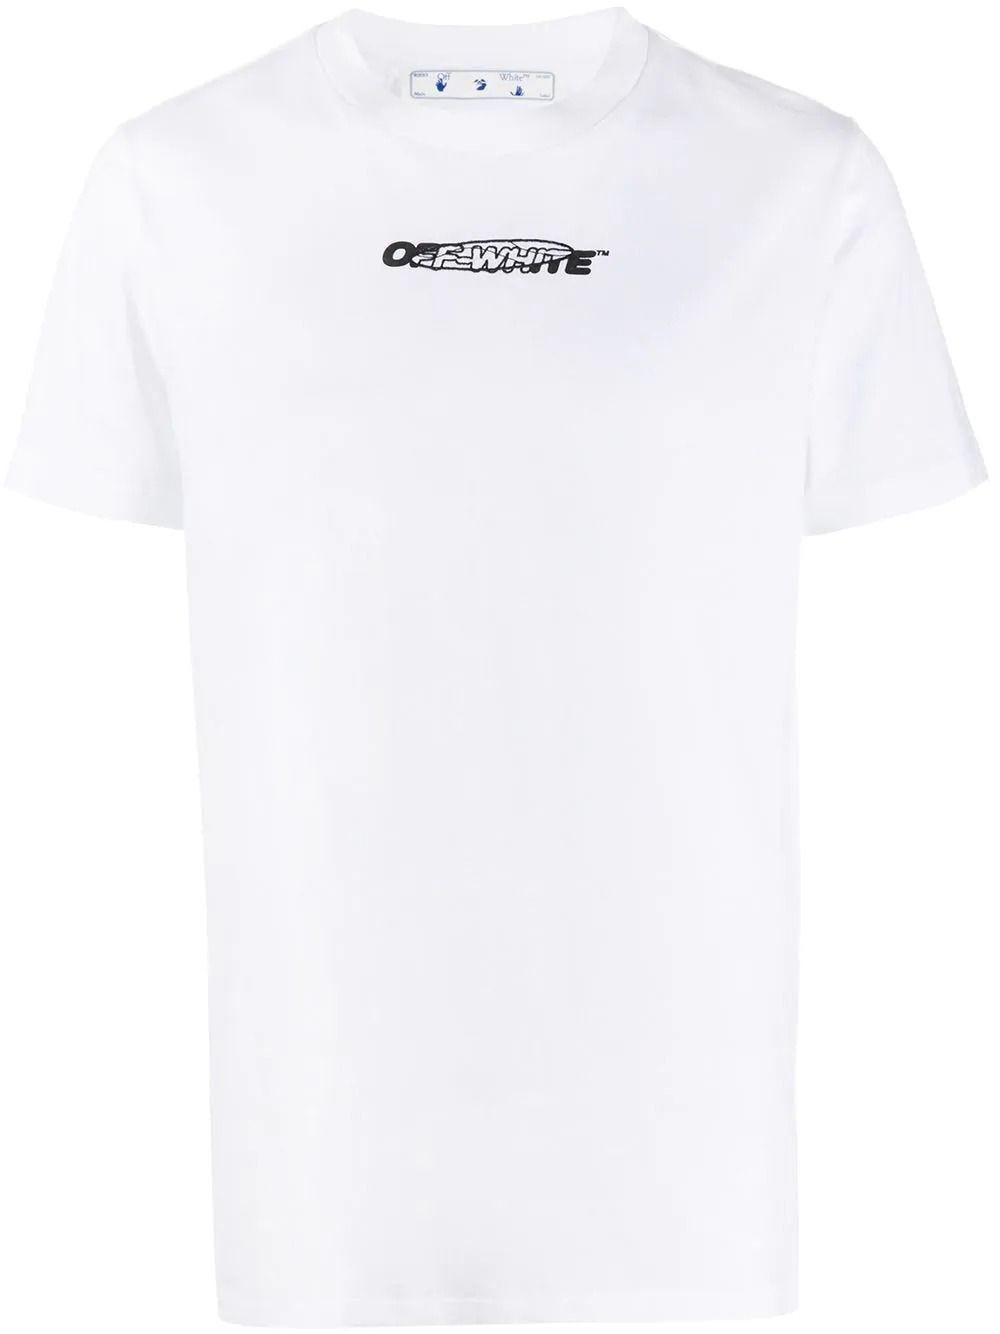 Off-White c/o Virgil Abloh Hand Logo Slim Tee in White for Men